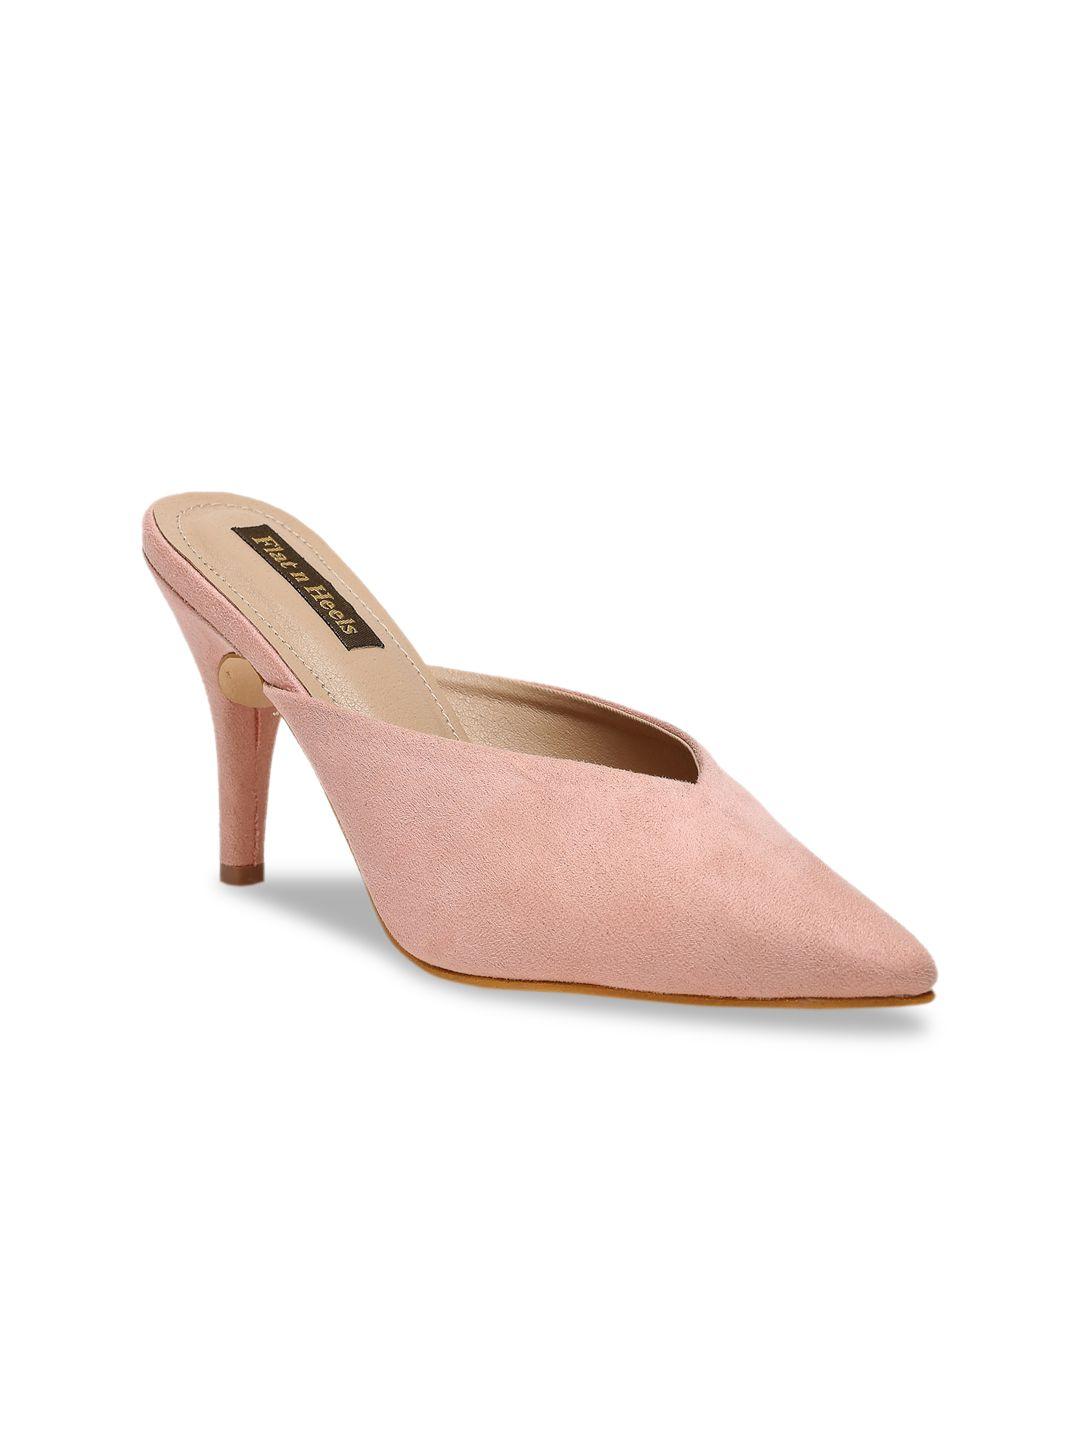 flat n heels women pink suede mules